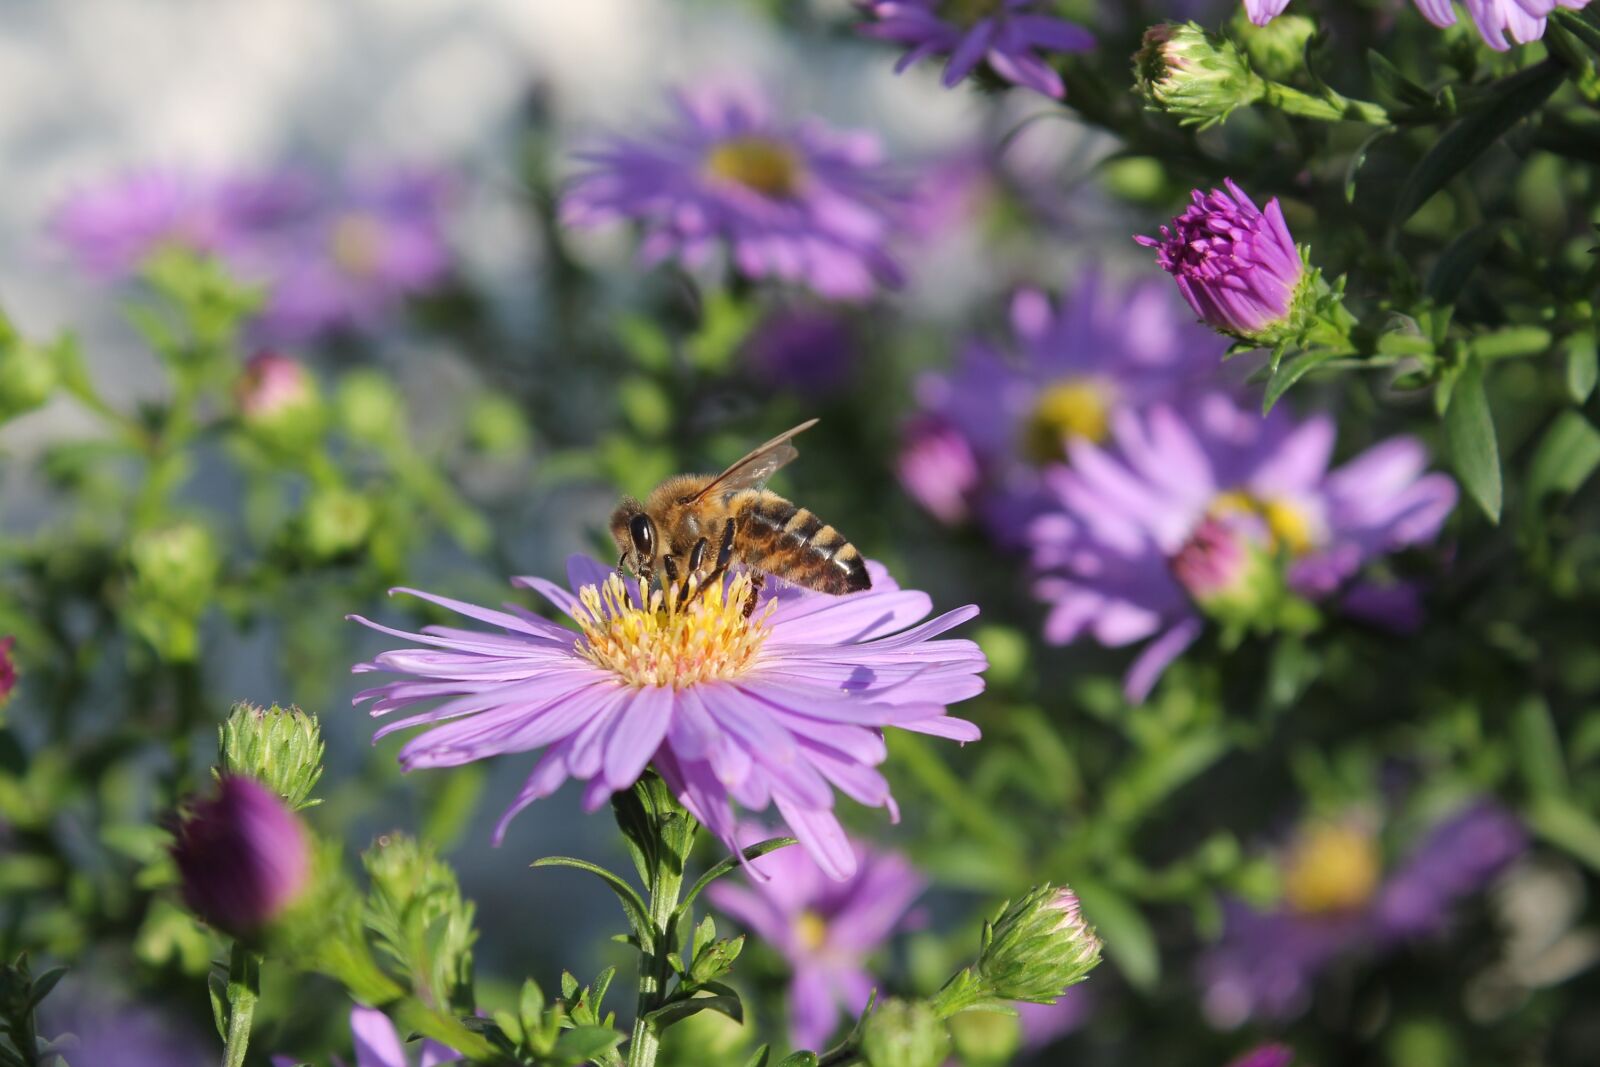 Canon EOS 1100D (EOS Rebel T3 / EOS Kiss X50) sample photo. "Herbstaster, bee, garden" photography